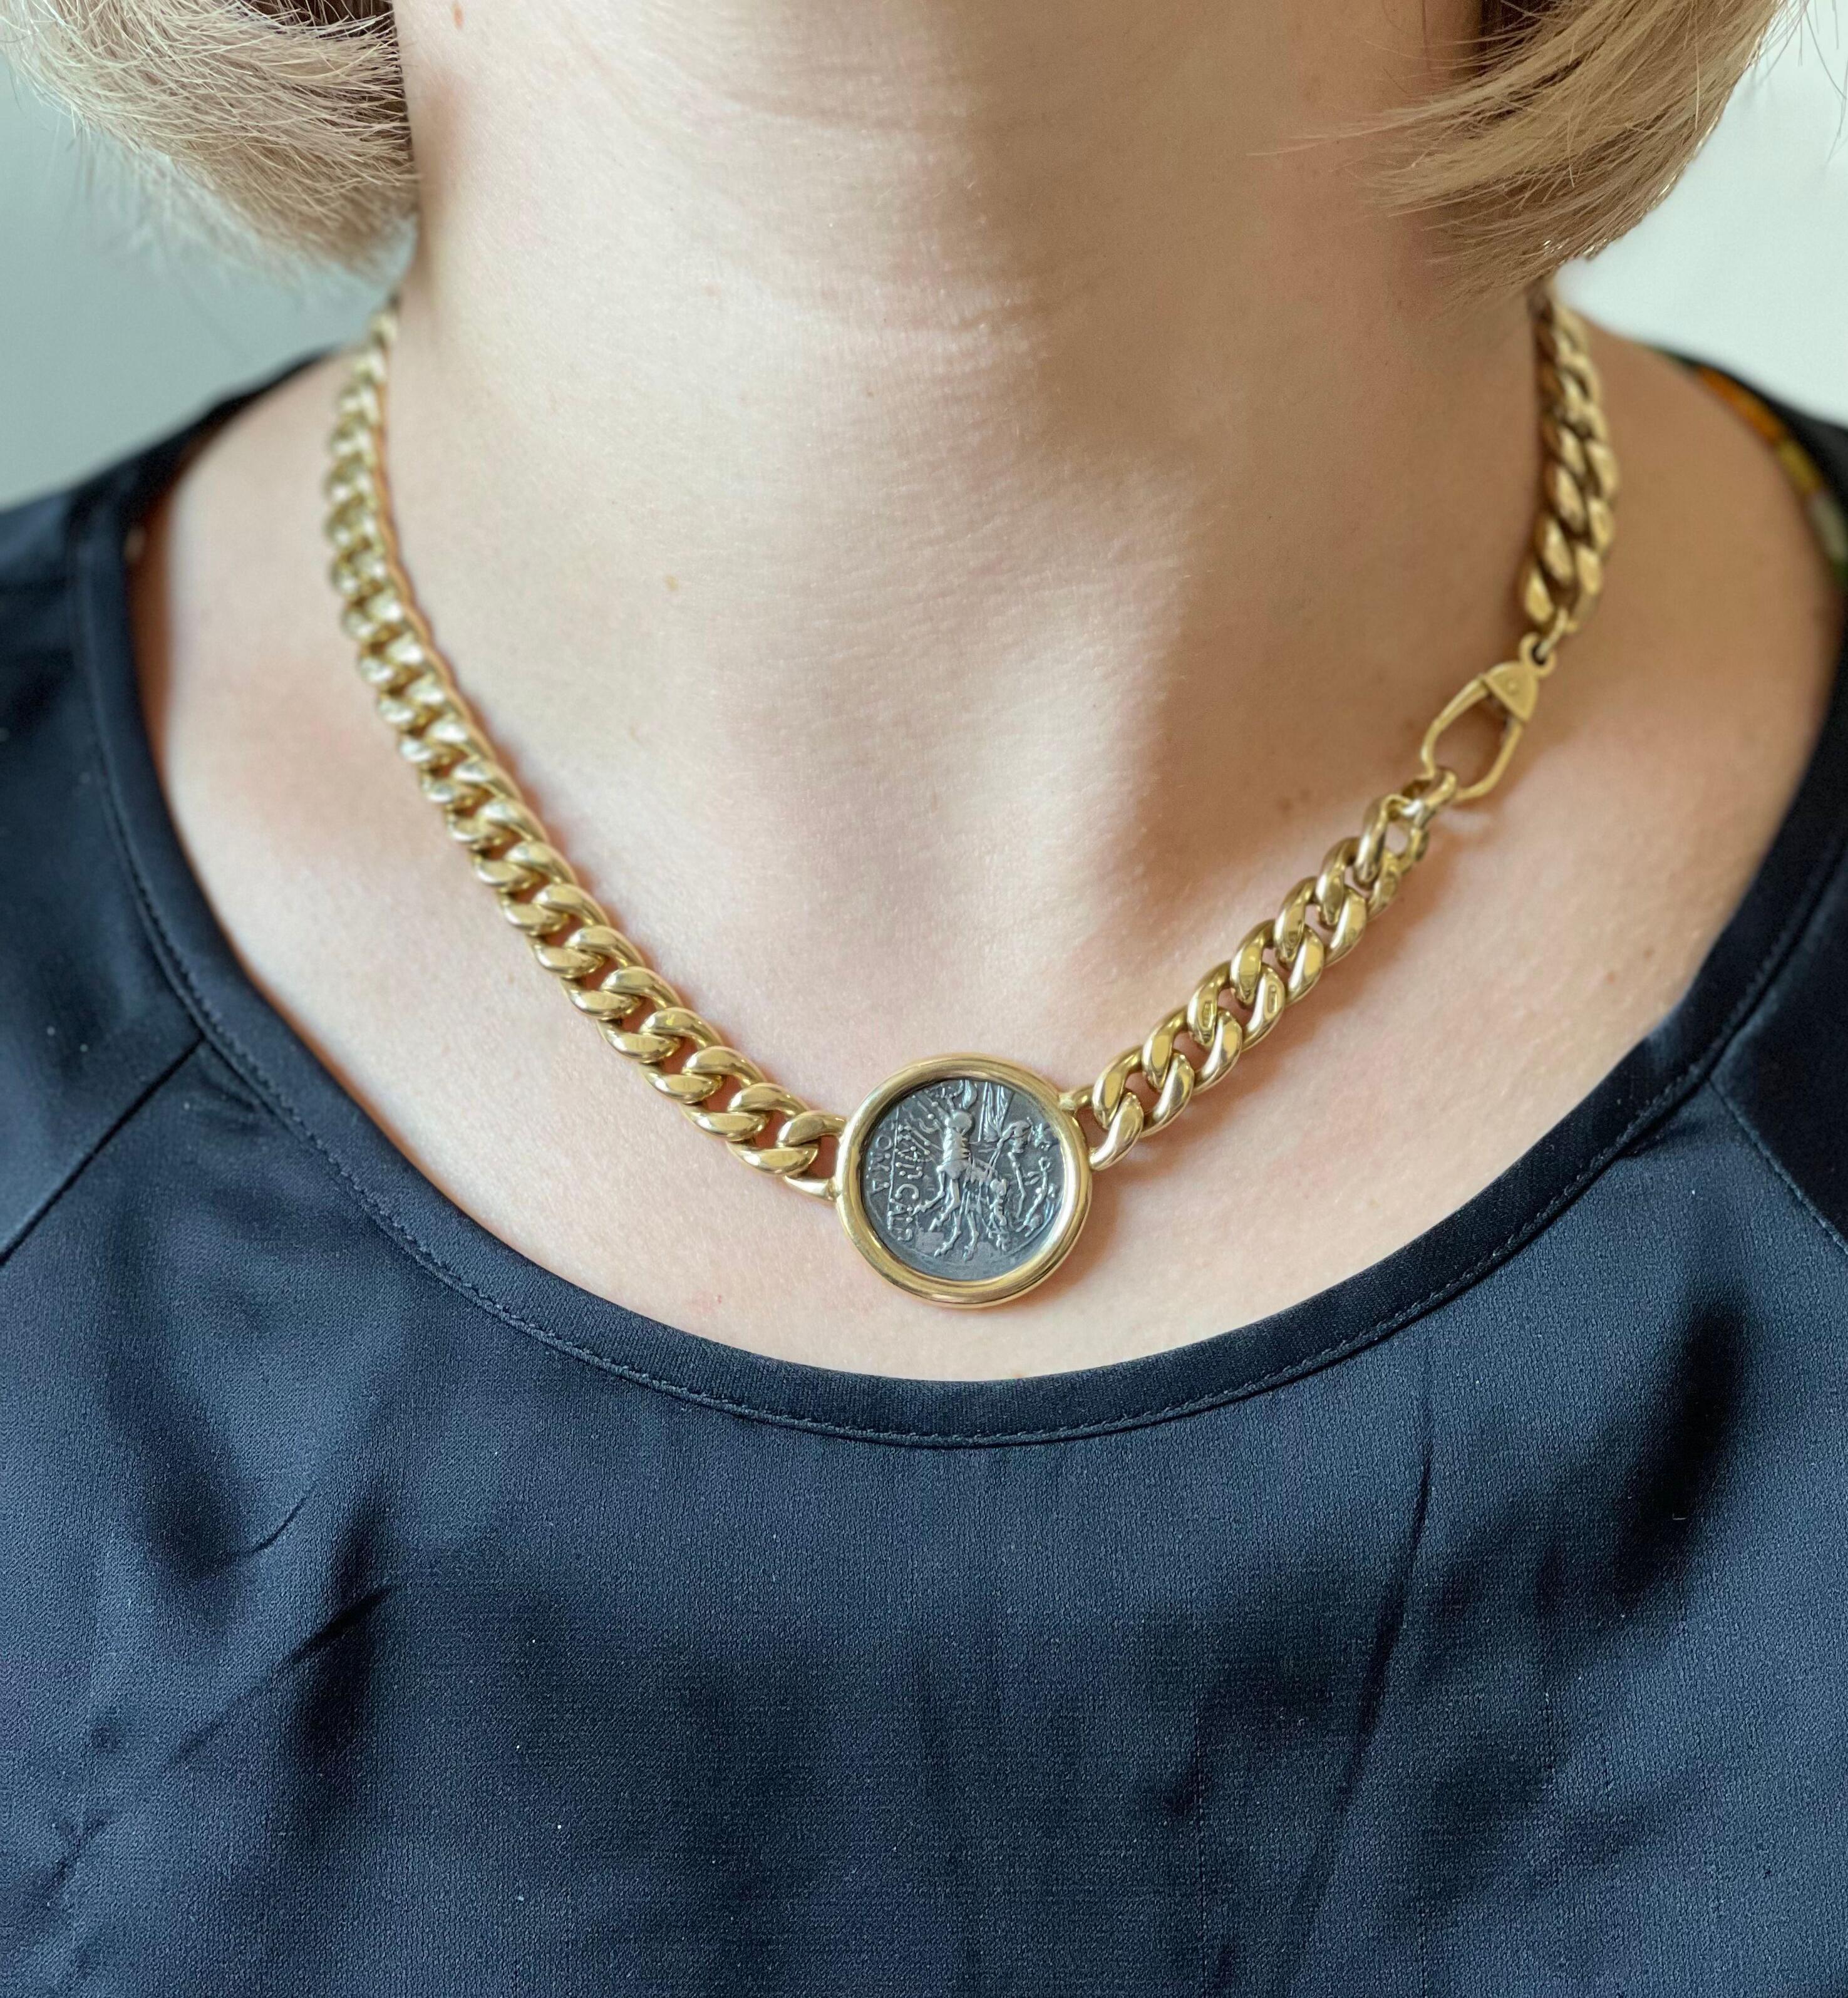 F. Moroni 18k Gold Kandare Link Kette Halskette, mit Lünette gesetzt antiken römischen Reiches Münze in der Mitte. Die Halskette ist 17